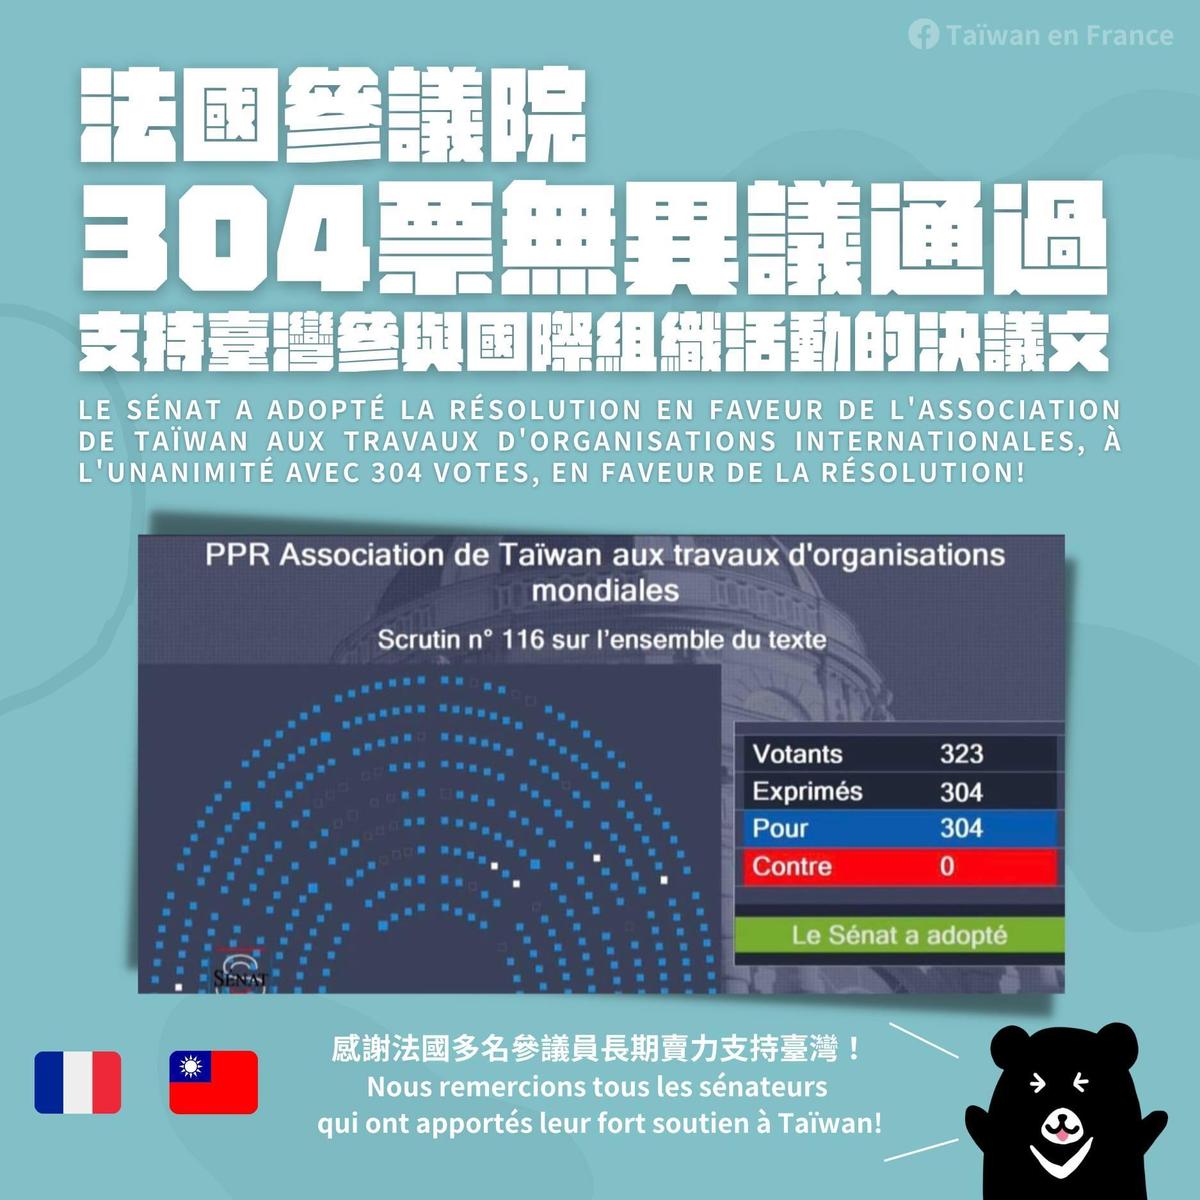 法國參議院以304票贊成、0票反對，無異議通過「台灣參與國際組織工作」。（翻攝自Taïwan en France臉書粉專）